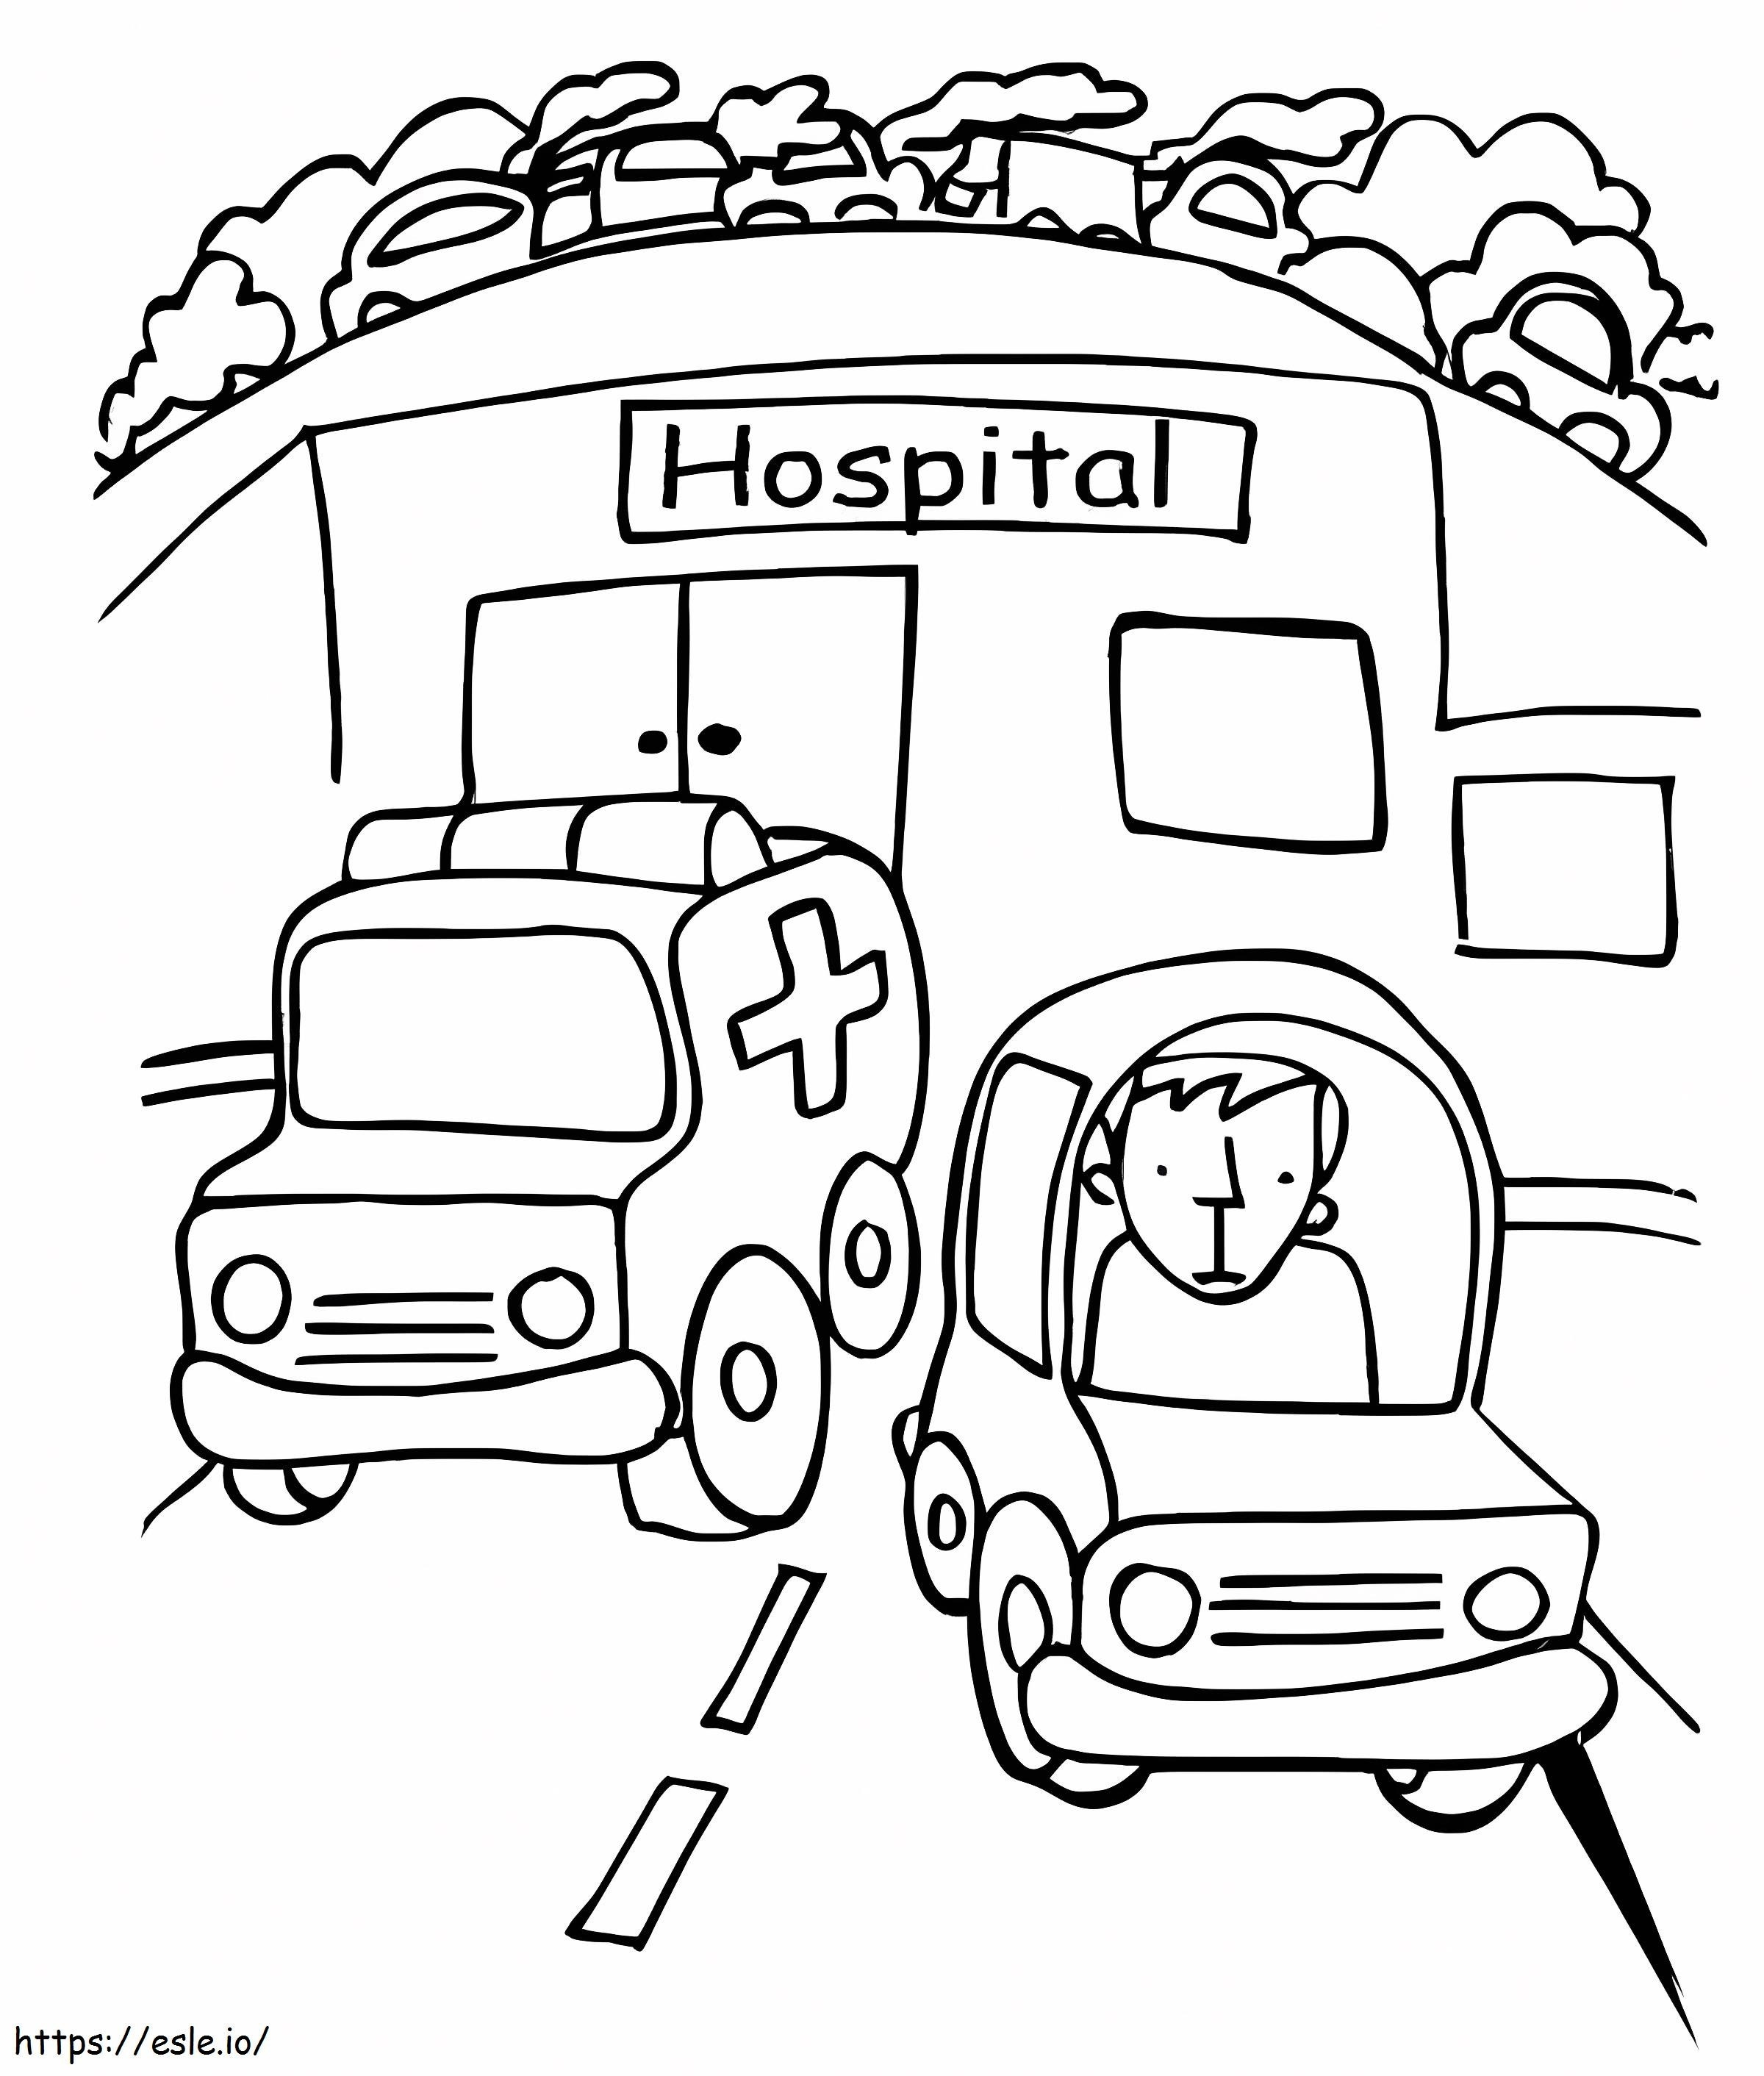 Krankenwagen und Krankenhaus ausmalbilder